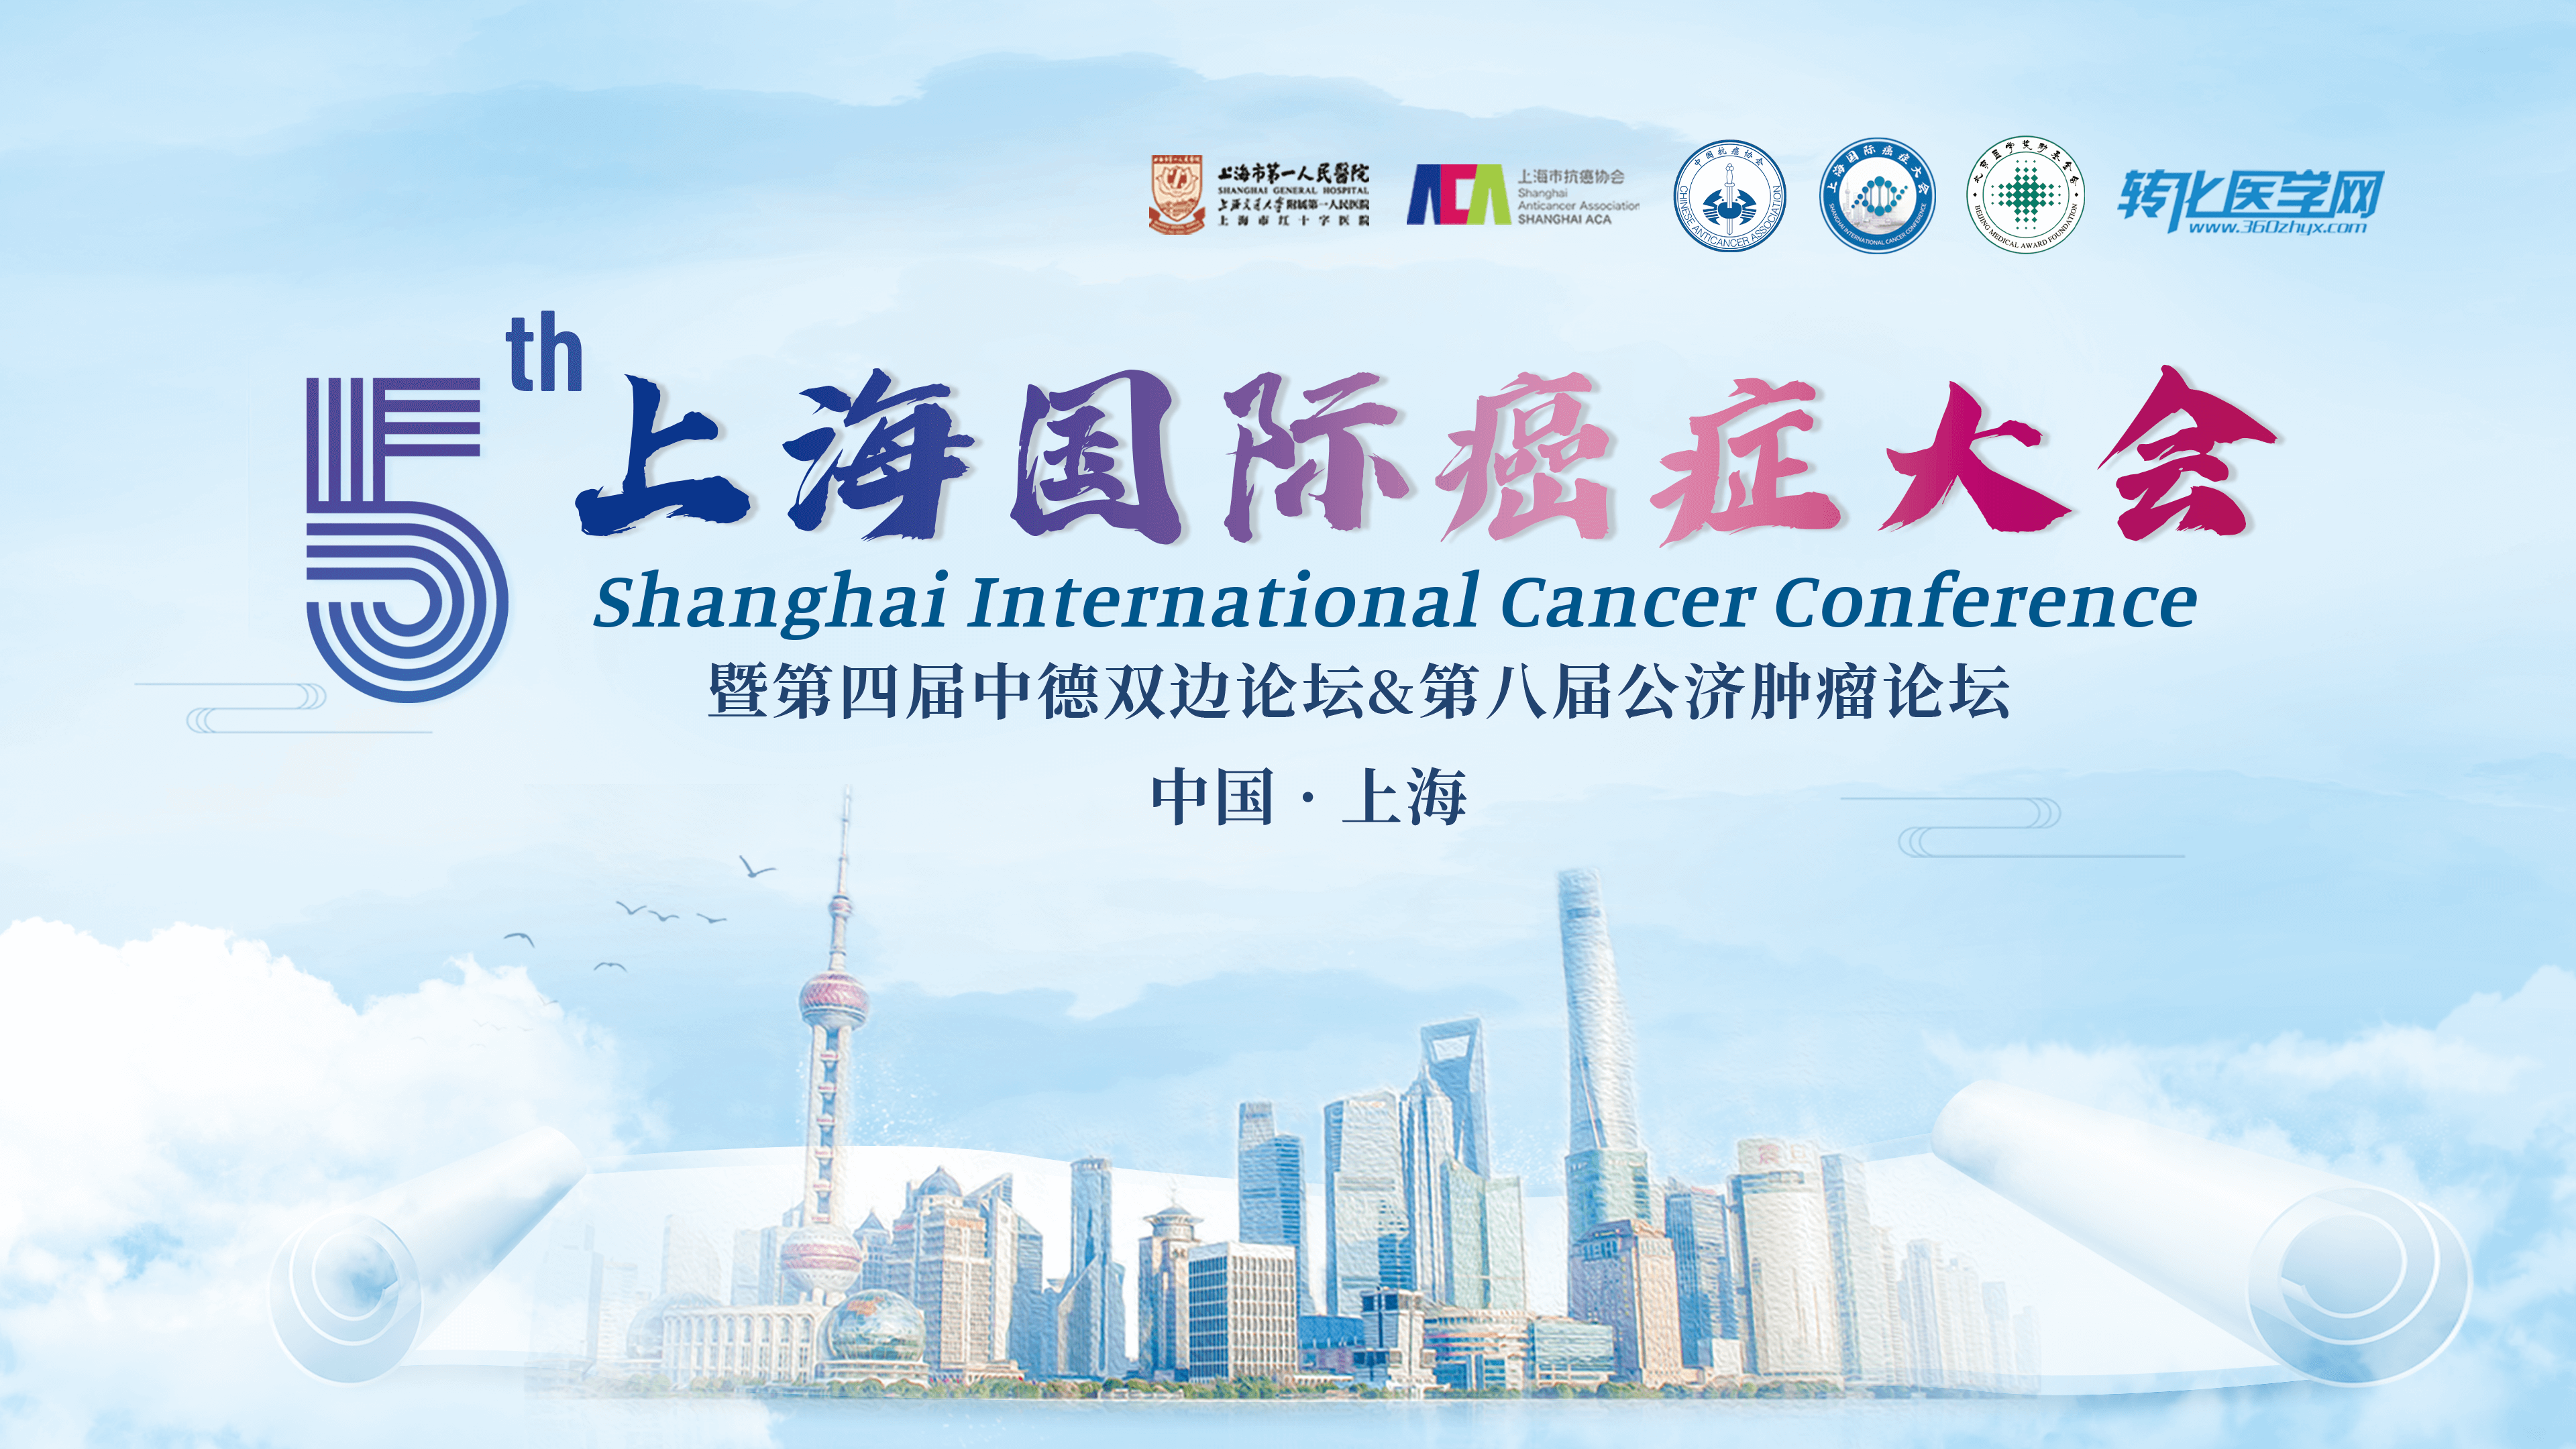 会议通知 | 陶术生物邀您共赴第五届上海国际癌症大会